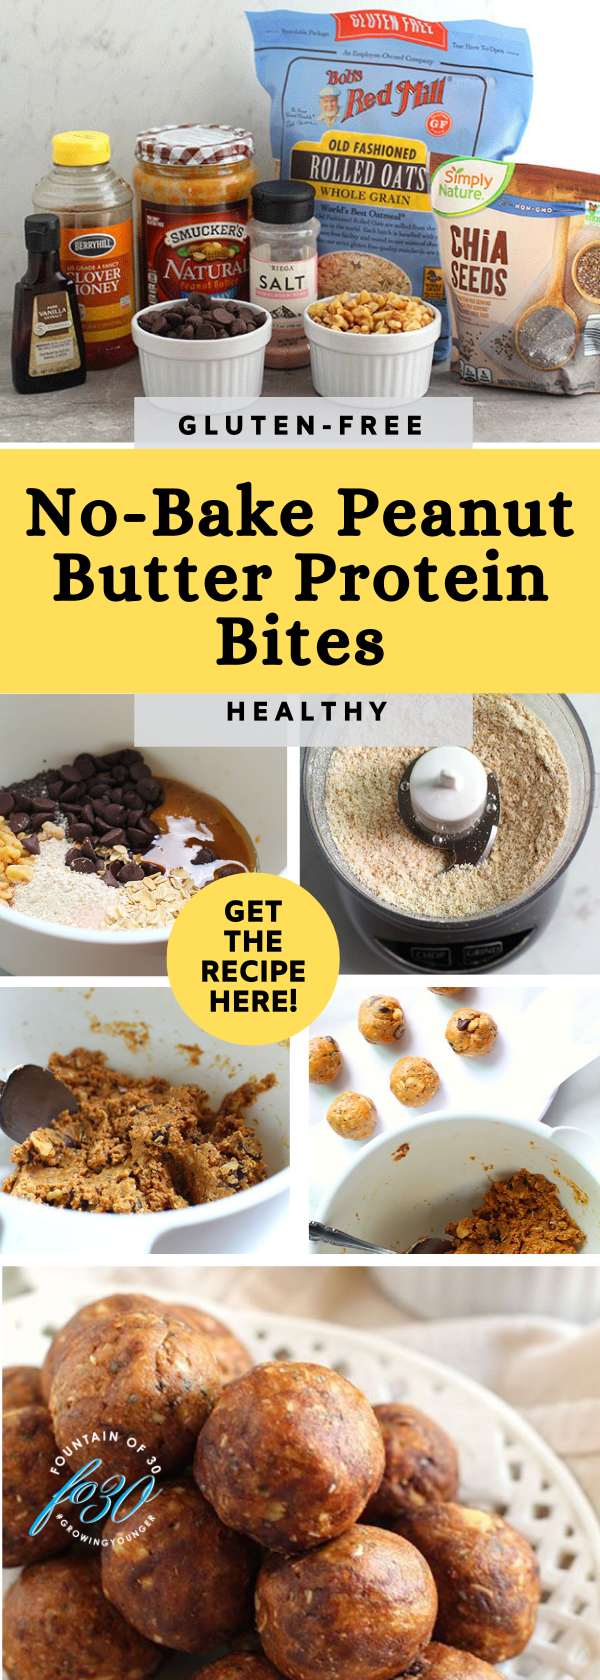 gluten free no bake peanut butter protein bites fountainof30